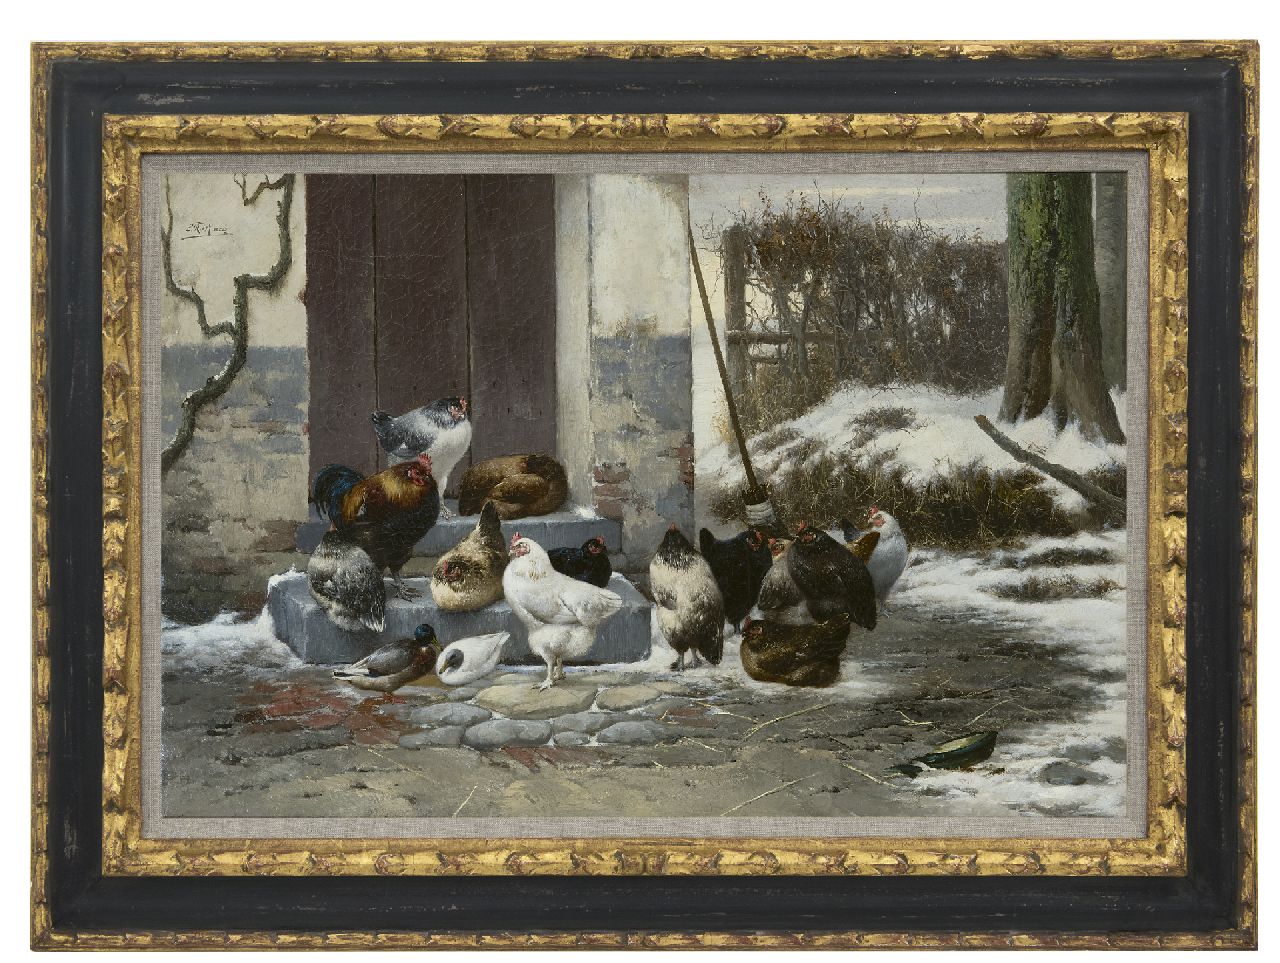 Maes E.R.  | Eugène Remy Maes, Wachten voor de stal, olieverf op doek 40,2 x 60,0 cm, gesigneerd linksboven